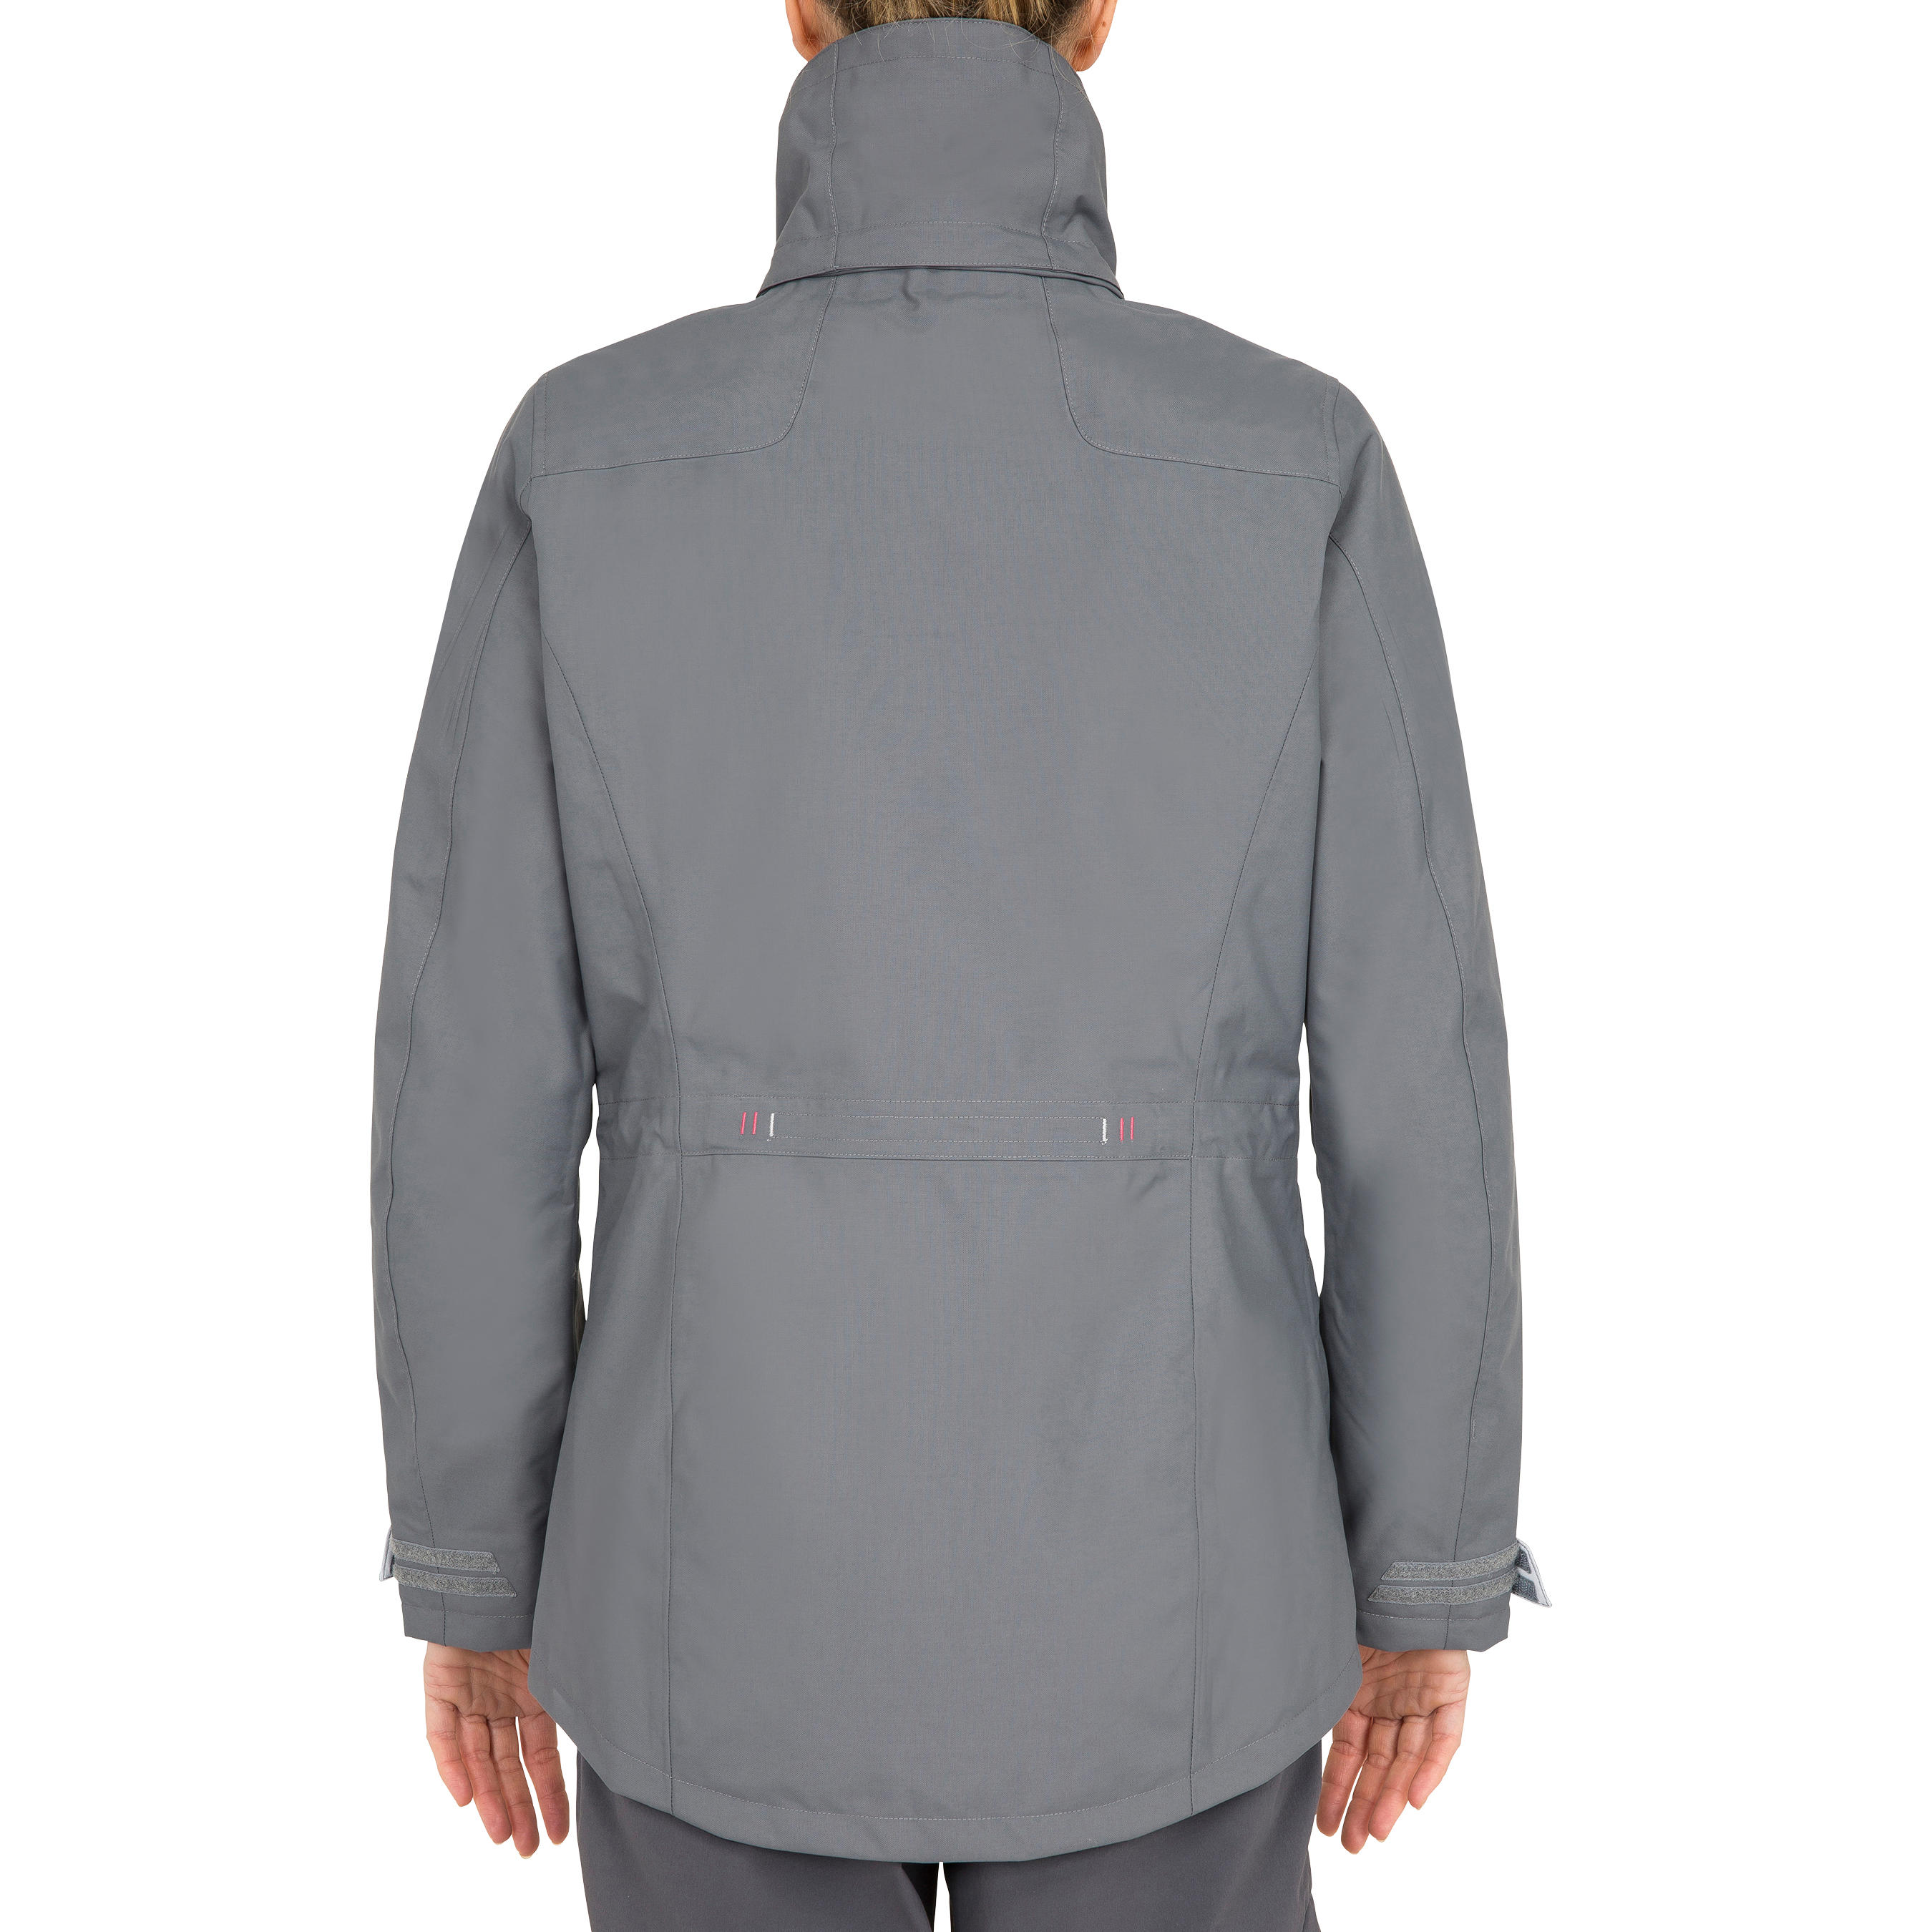 Coastal 100 women's waterproof, windproof, breathable jacket - grey 11/22